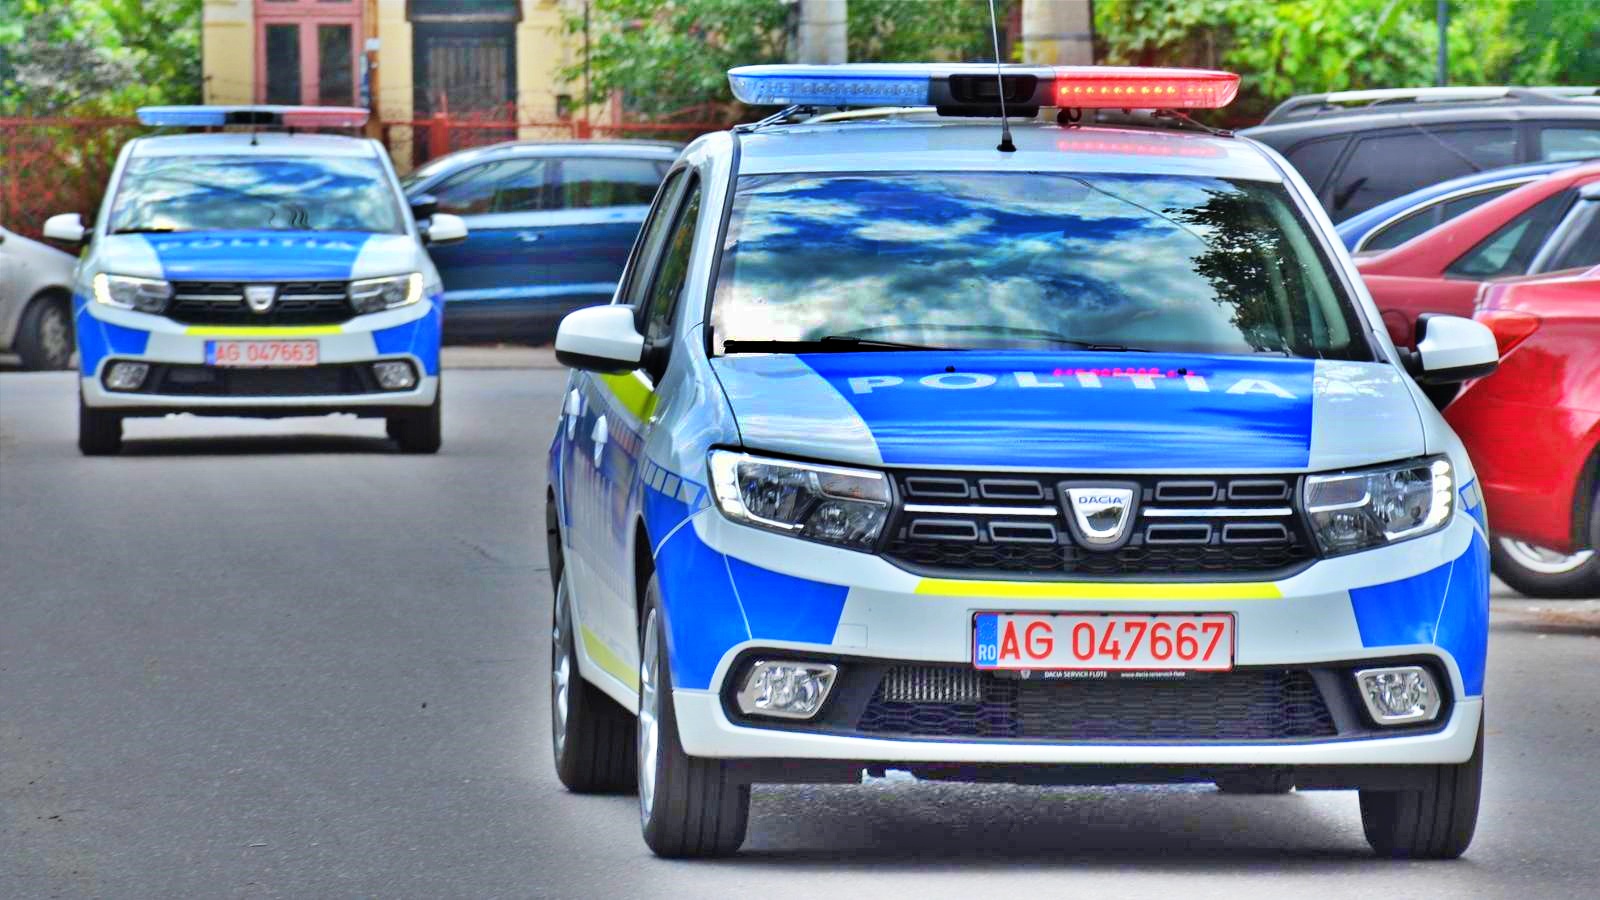 Alarmsignal der rumänischen Polizei. Betrunkener LKW-Fahrer schläft am Lenkrad